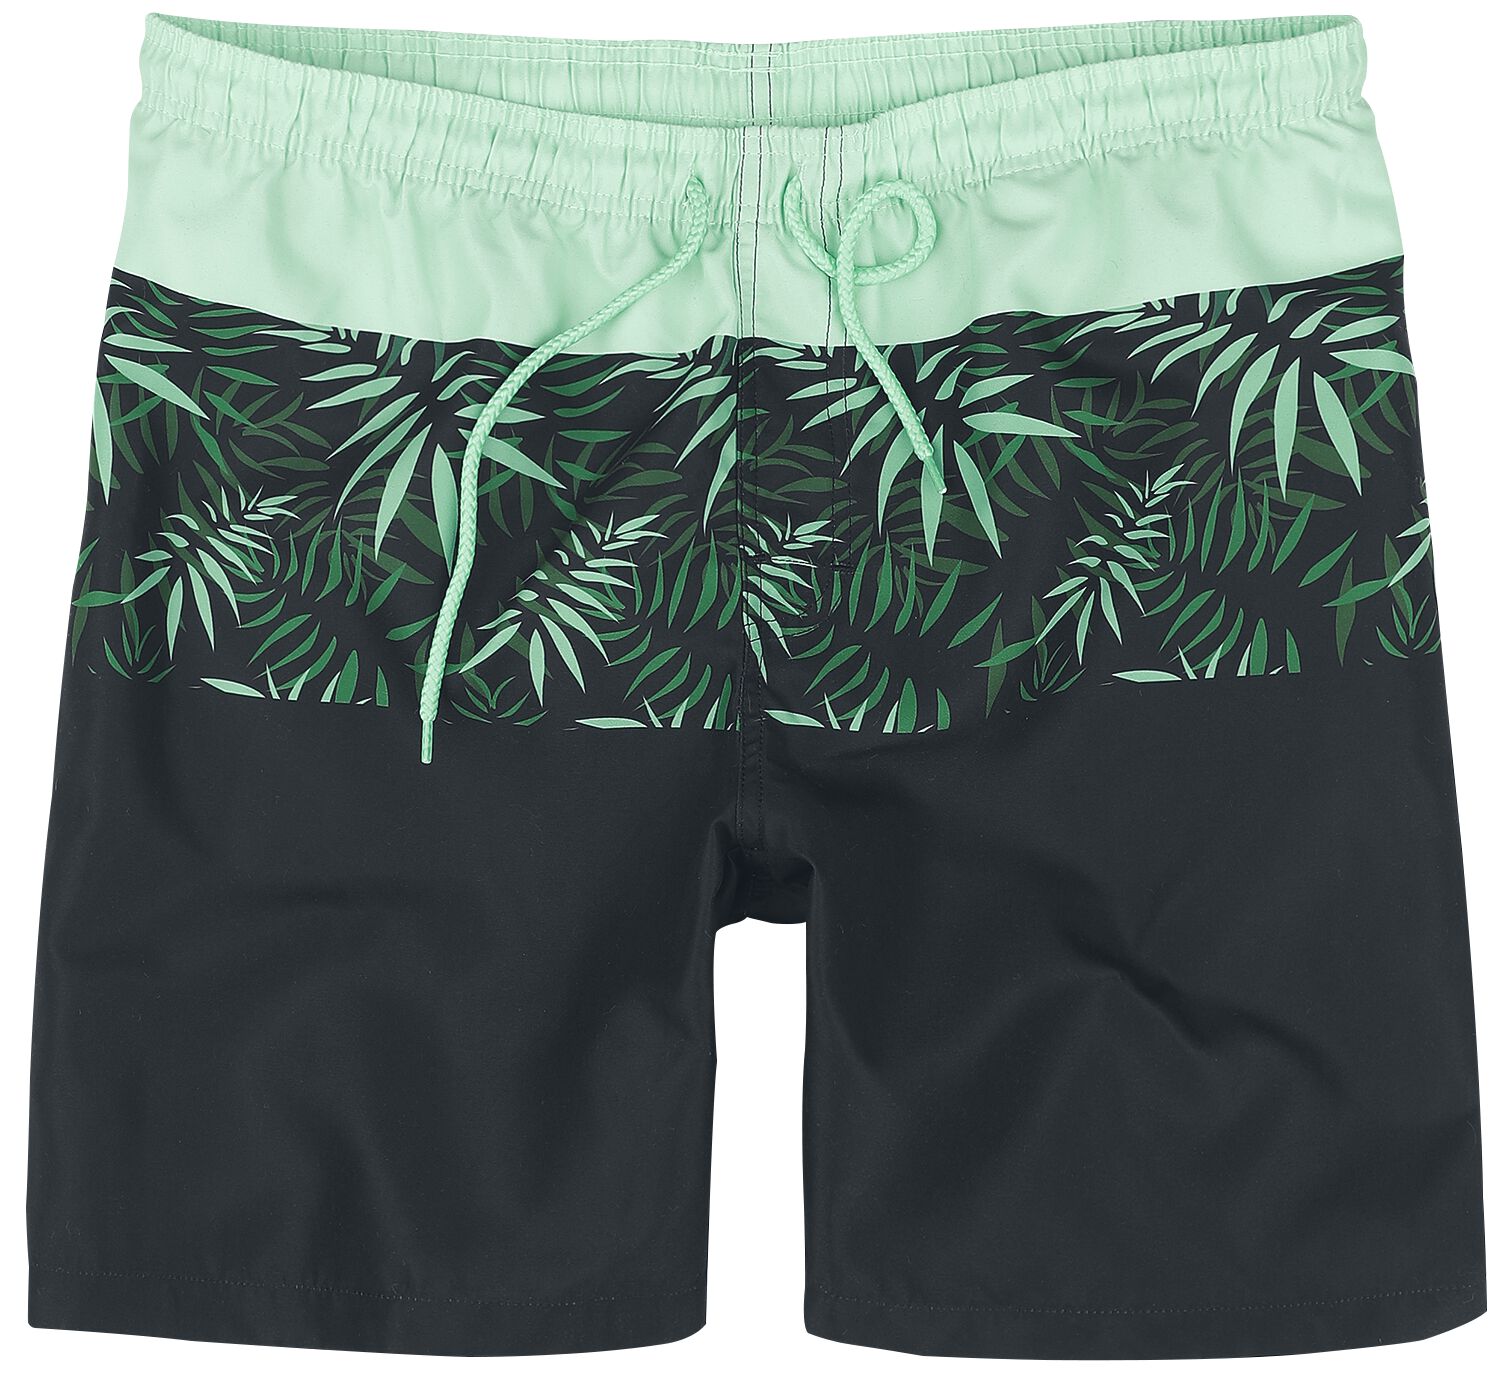 Badeshort für Männer  schwarz/grün "Swim Shorts With Palm Trees" von RED by EMP von RED by EMP